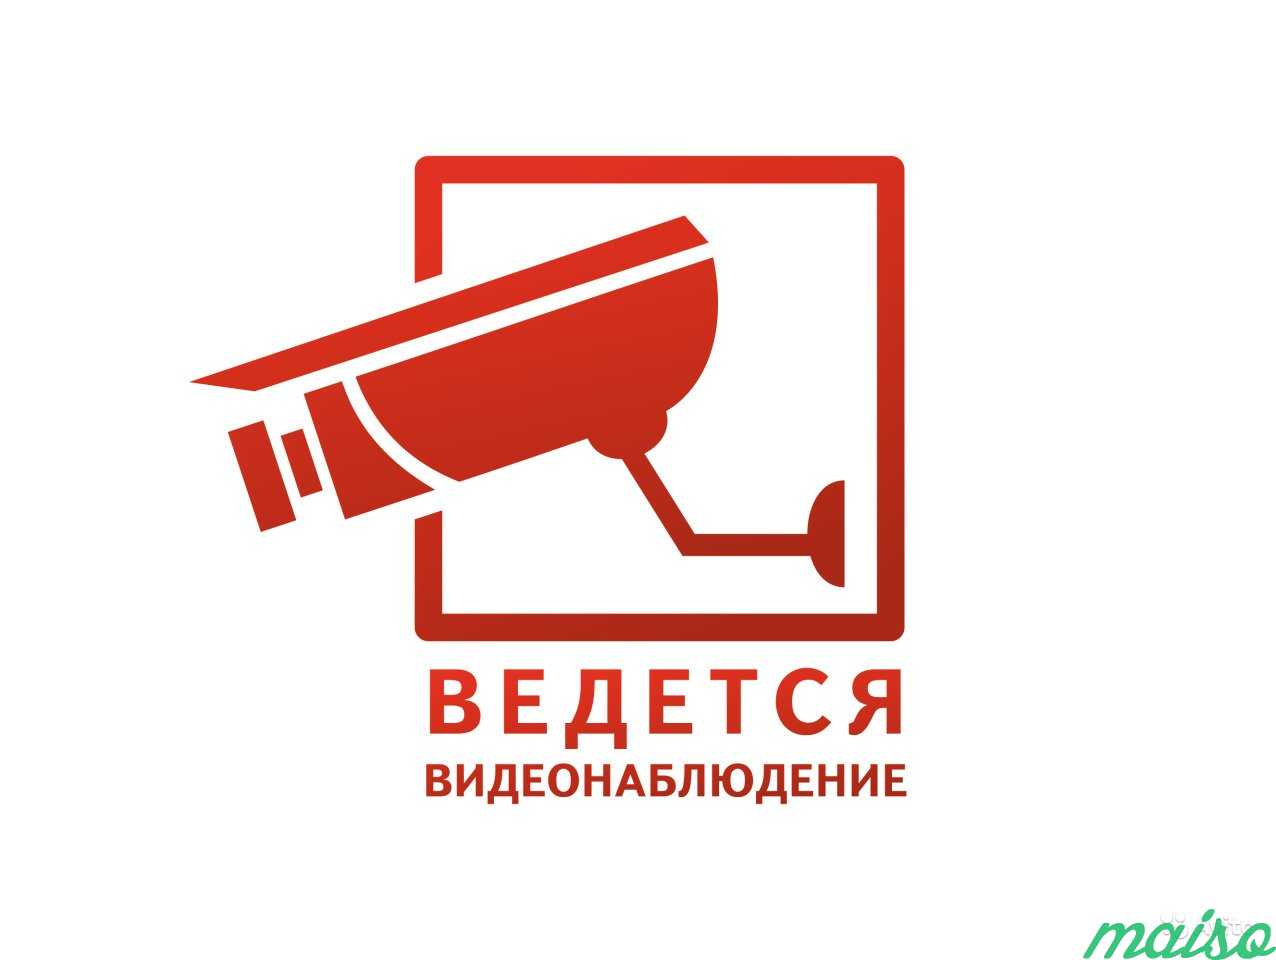 Установка систем видеонаблюдения в Москве. Фото 1